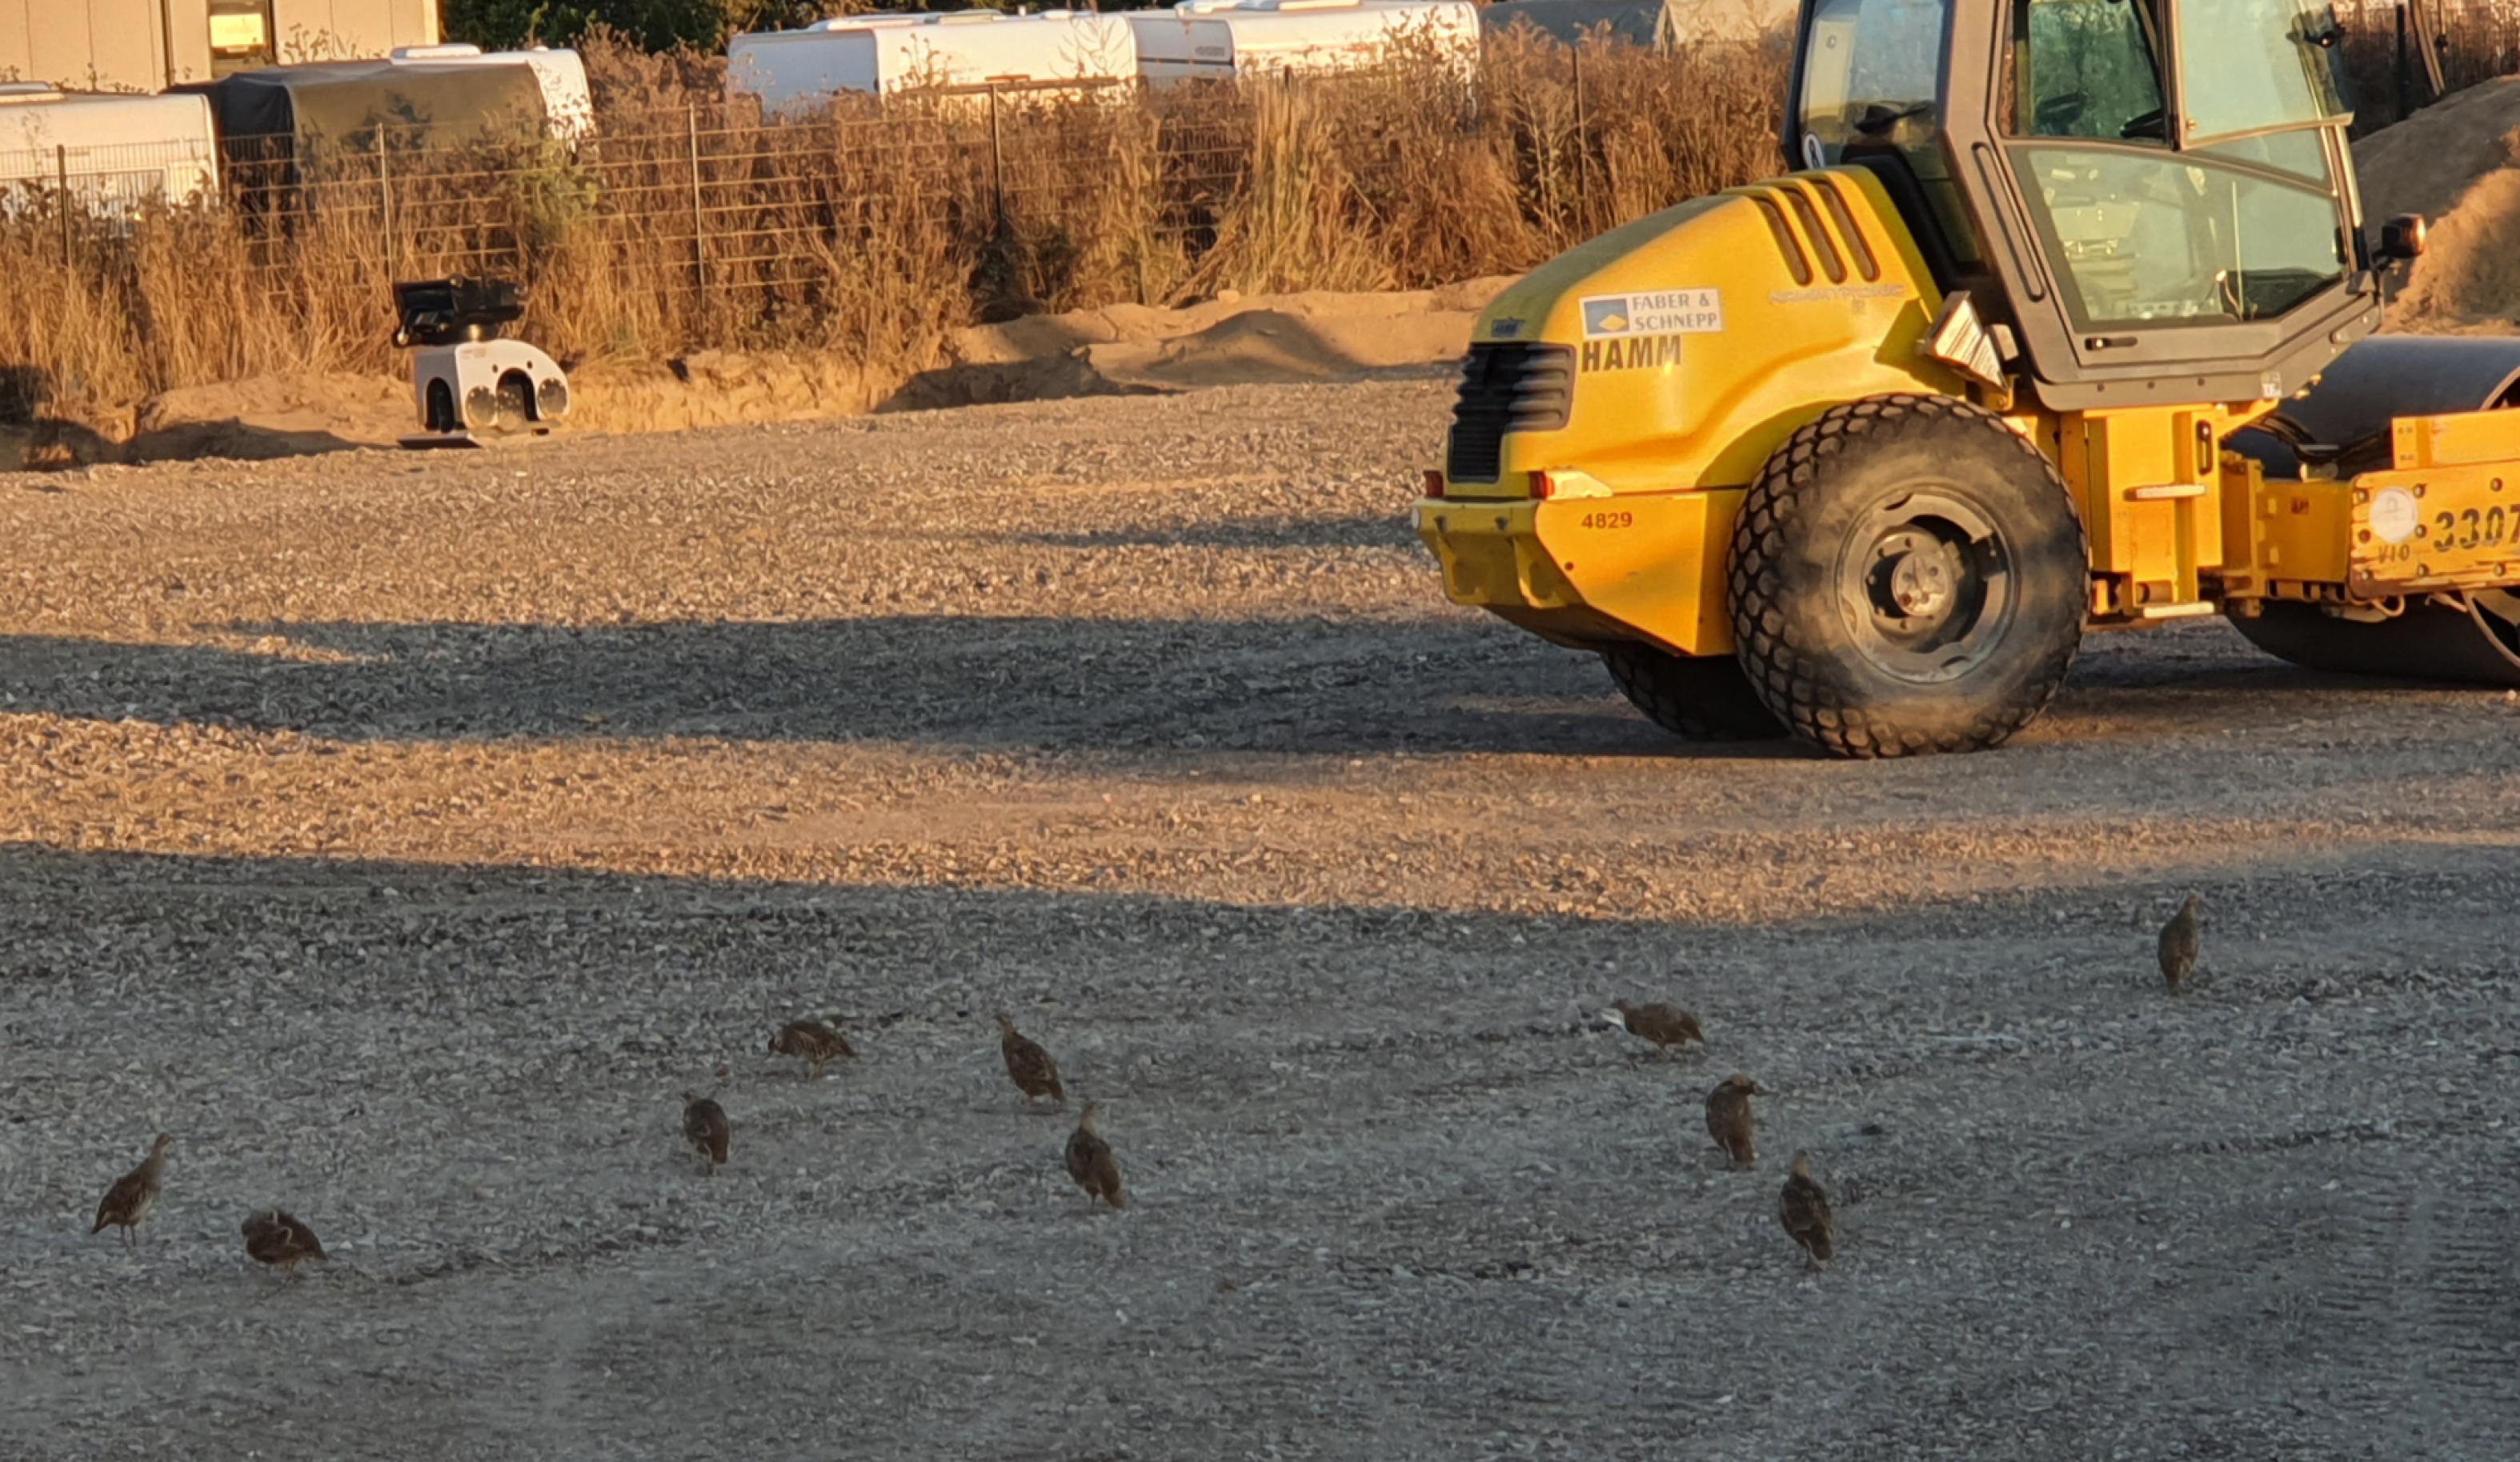 Eine Gruppe Rebhühner steht auf der mit Kies bestreuten Fläche, wo bis vor kurzem ihre Wiese war. Im Hintergrund ein gelber Bagger und weitere Baustellenfahrzeuge.